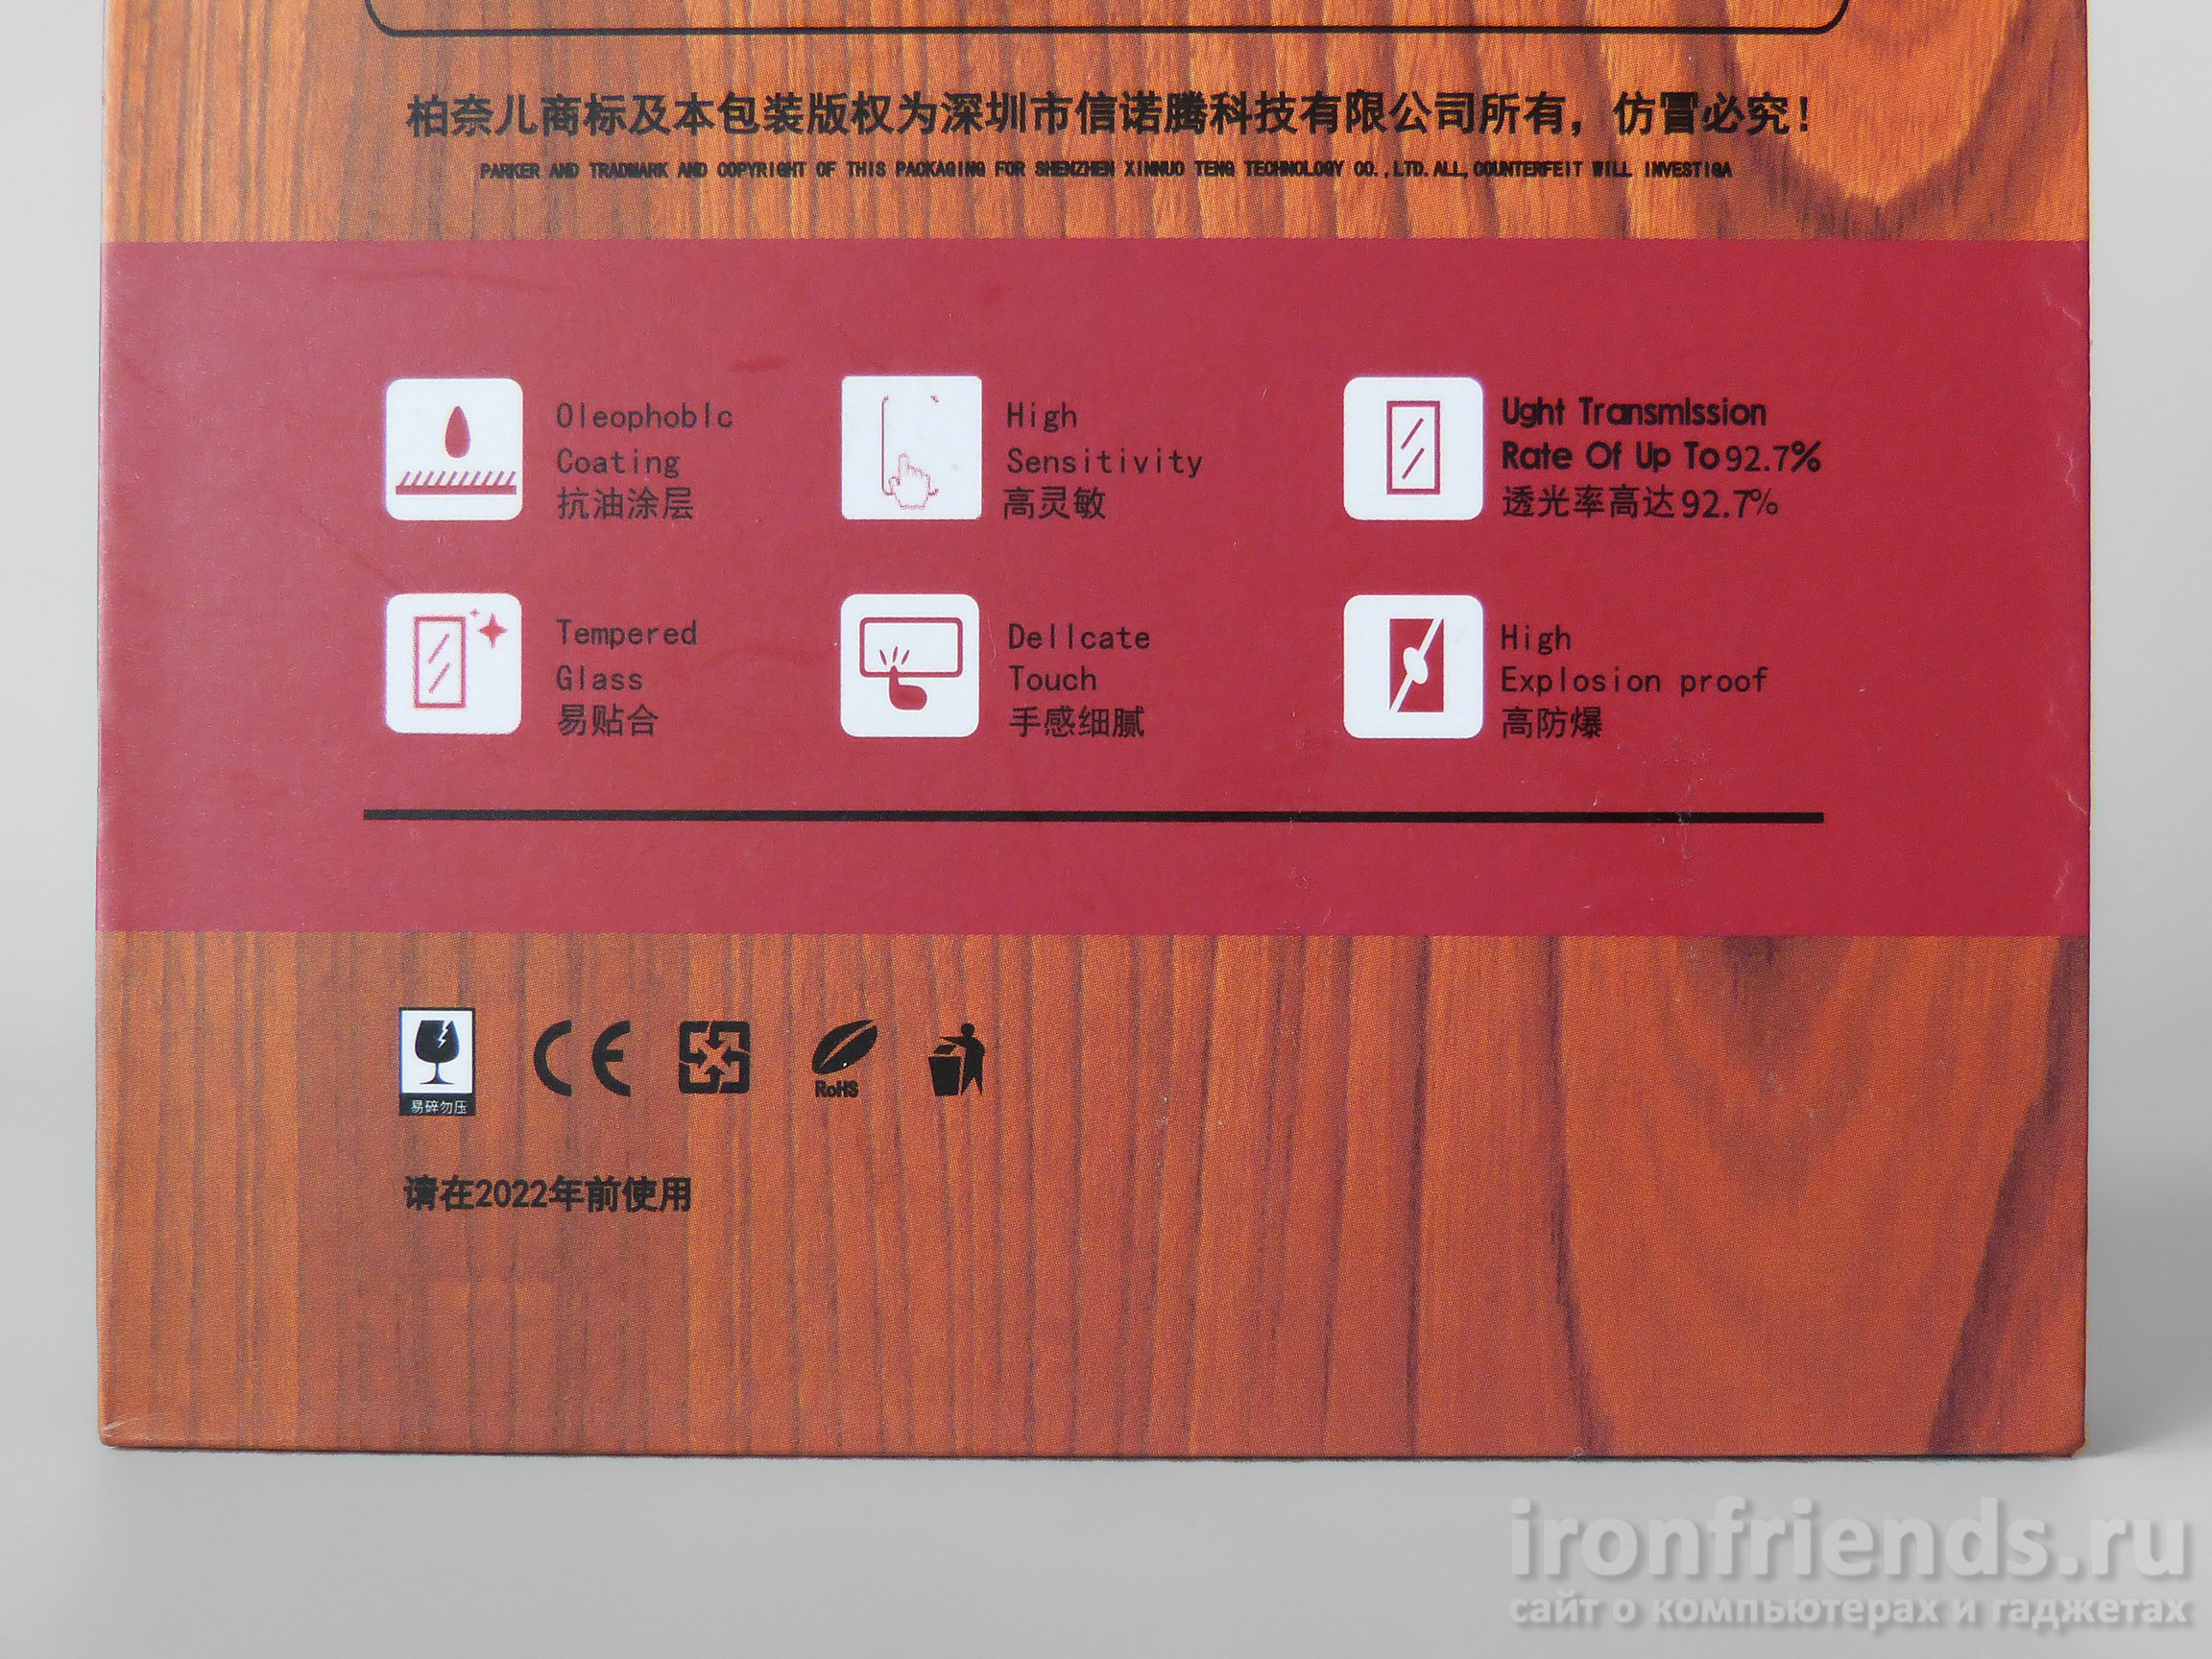 Характеристики стекла Bonair для Xiaomi Redmi 4X